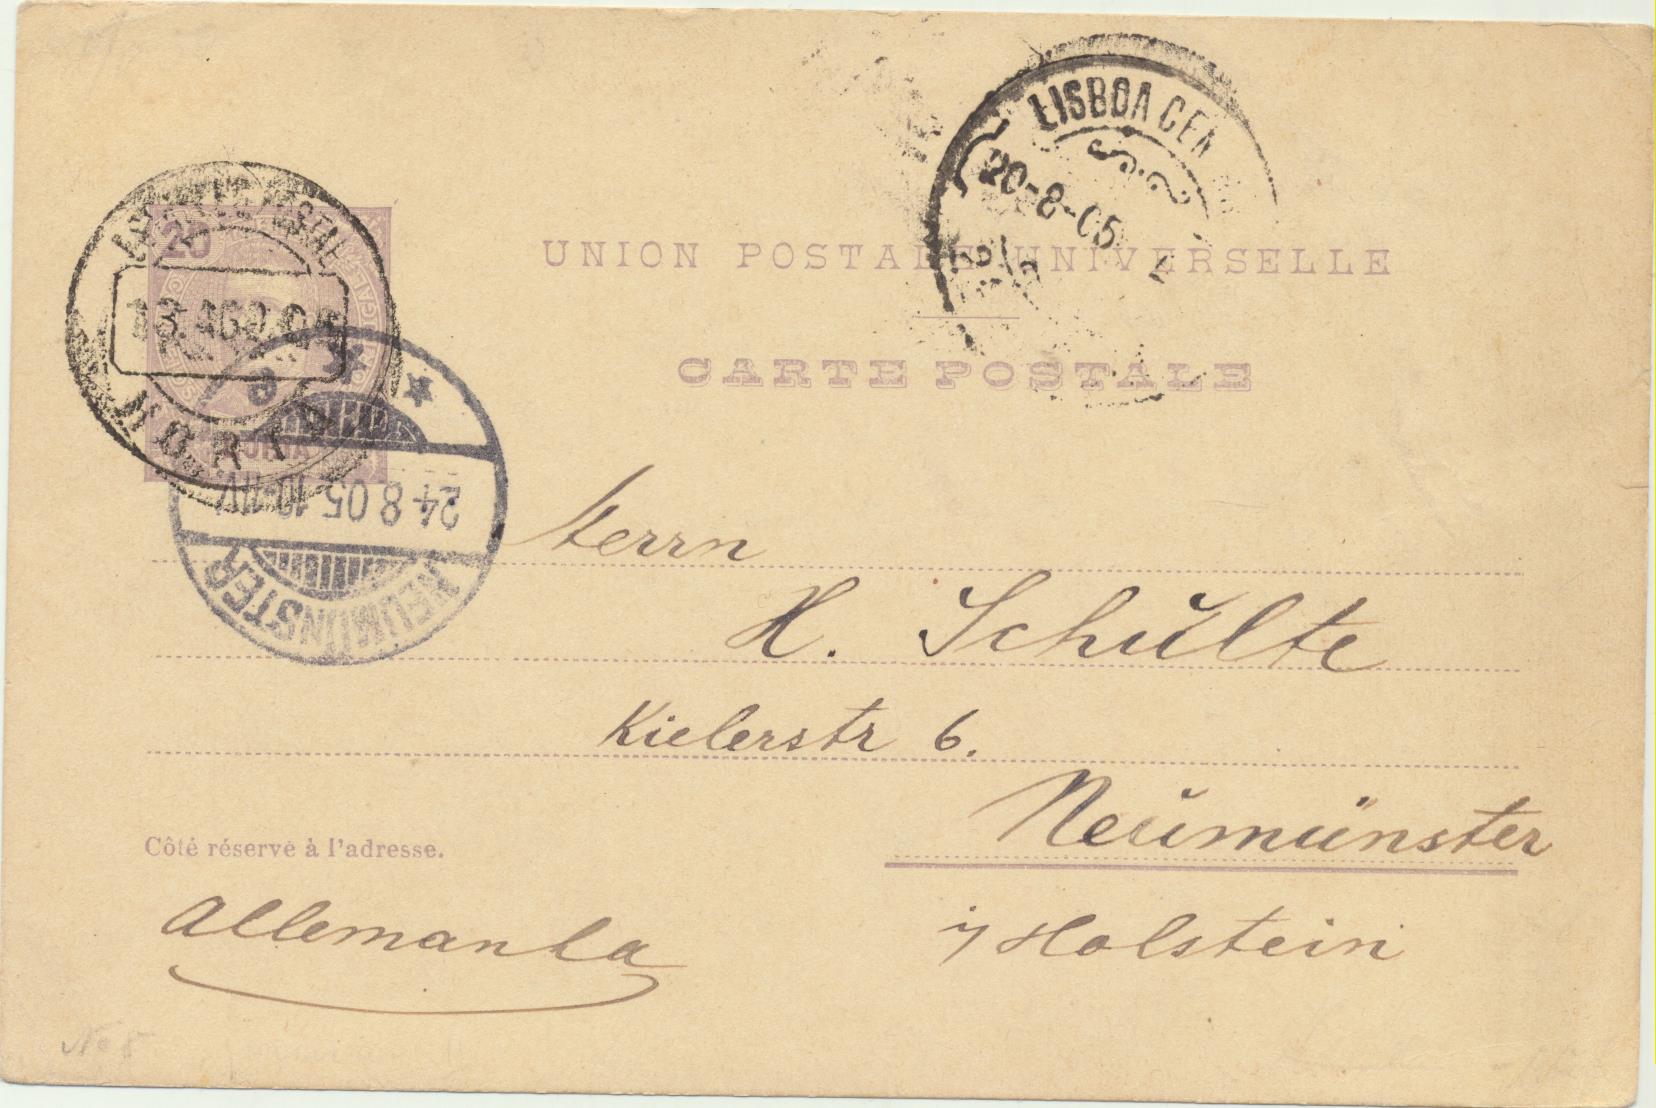 Portugal. Entero Postal (20 Reis) De Lisboa a Neumunster, del 20-8-1905. Con fechador de llegada